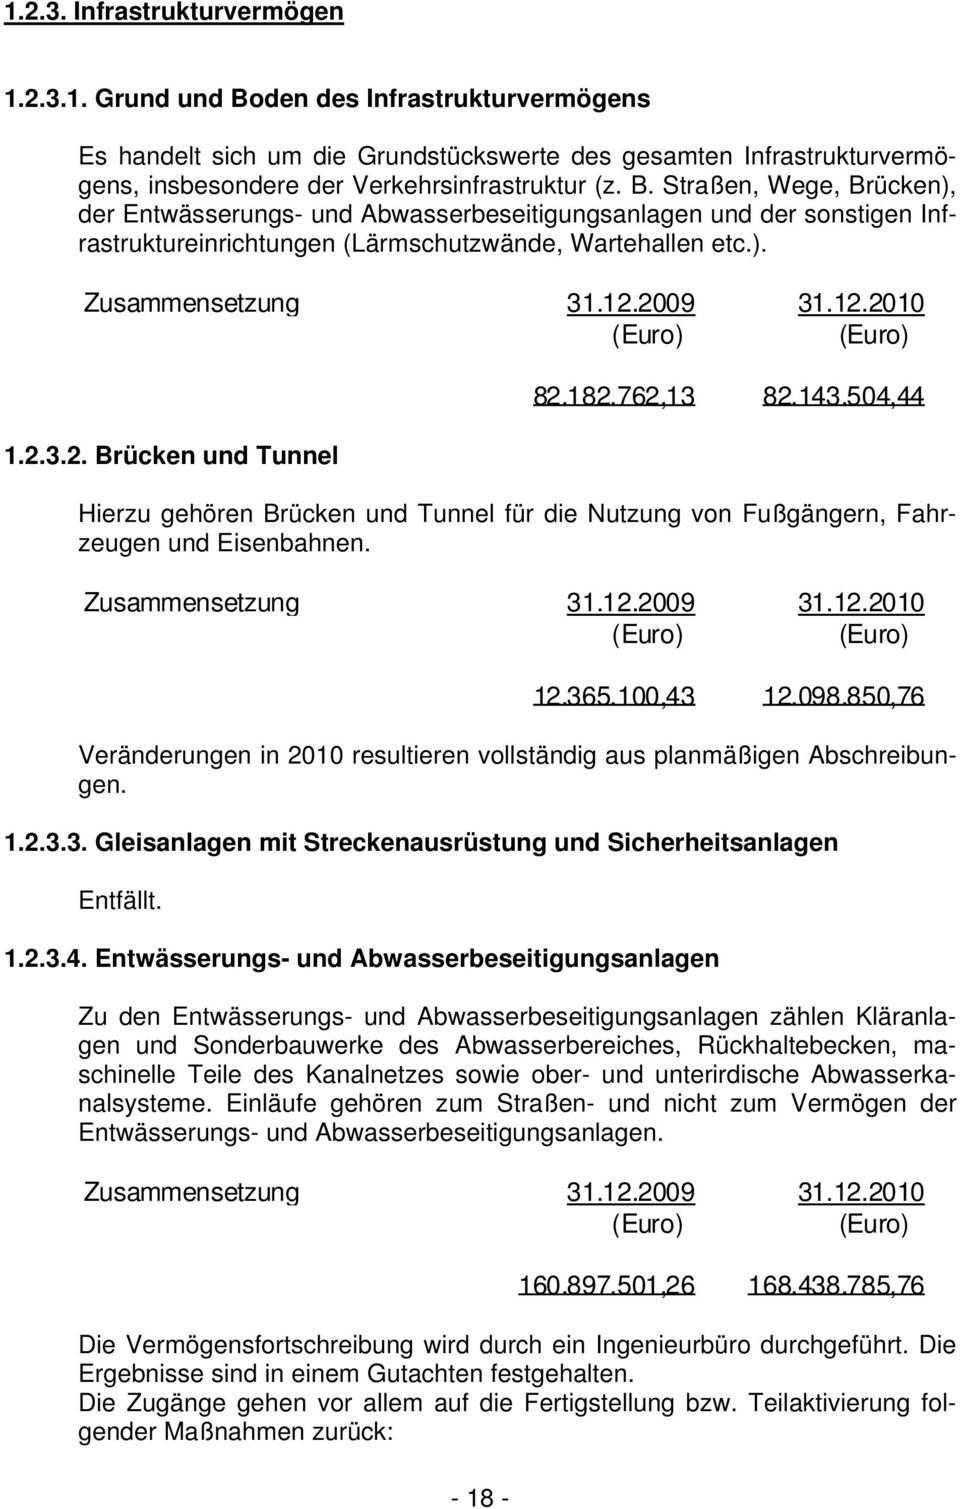 2009 31.12.2010 (Euro) (Euro) 1.2.3.2. Brücken und Tunnel 82.182.762,13 82.143.504,44 Hierzu gehören Brücken und Tunnel für die Nutzung von Fußgängern, Fahrzeugen und Eisenbahnen. Zusammensetzung 31.